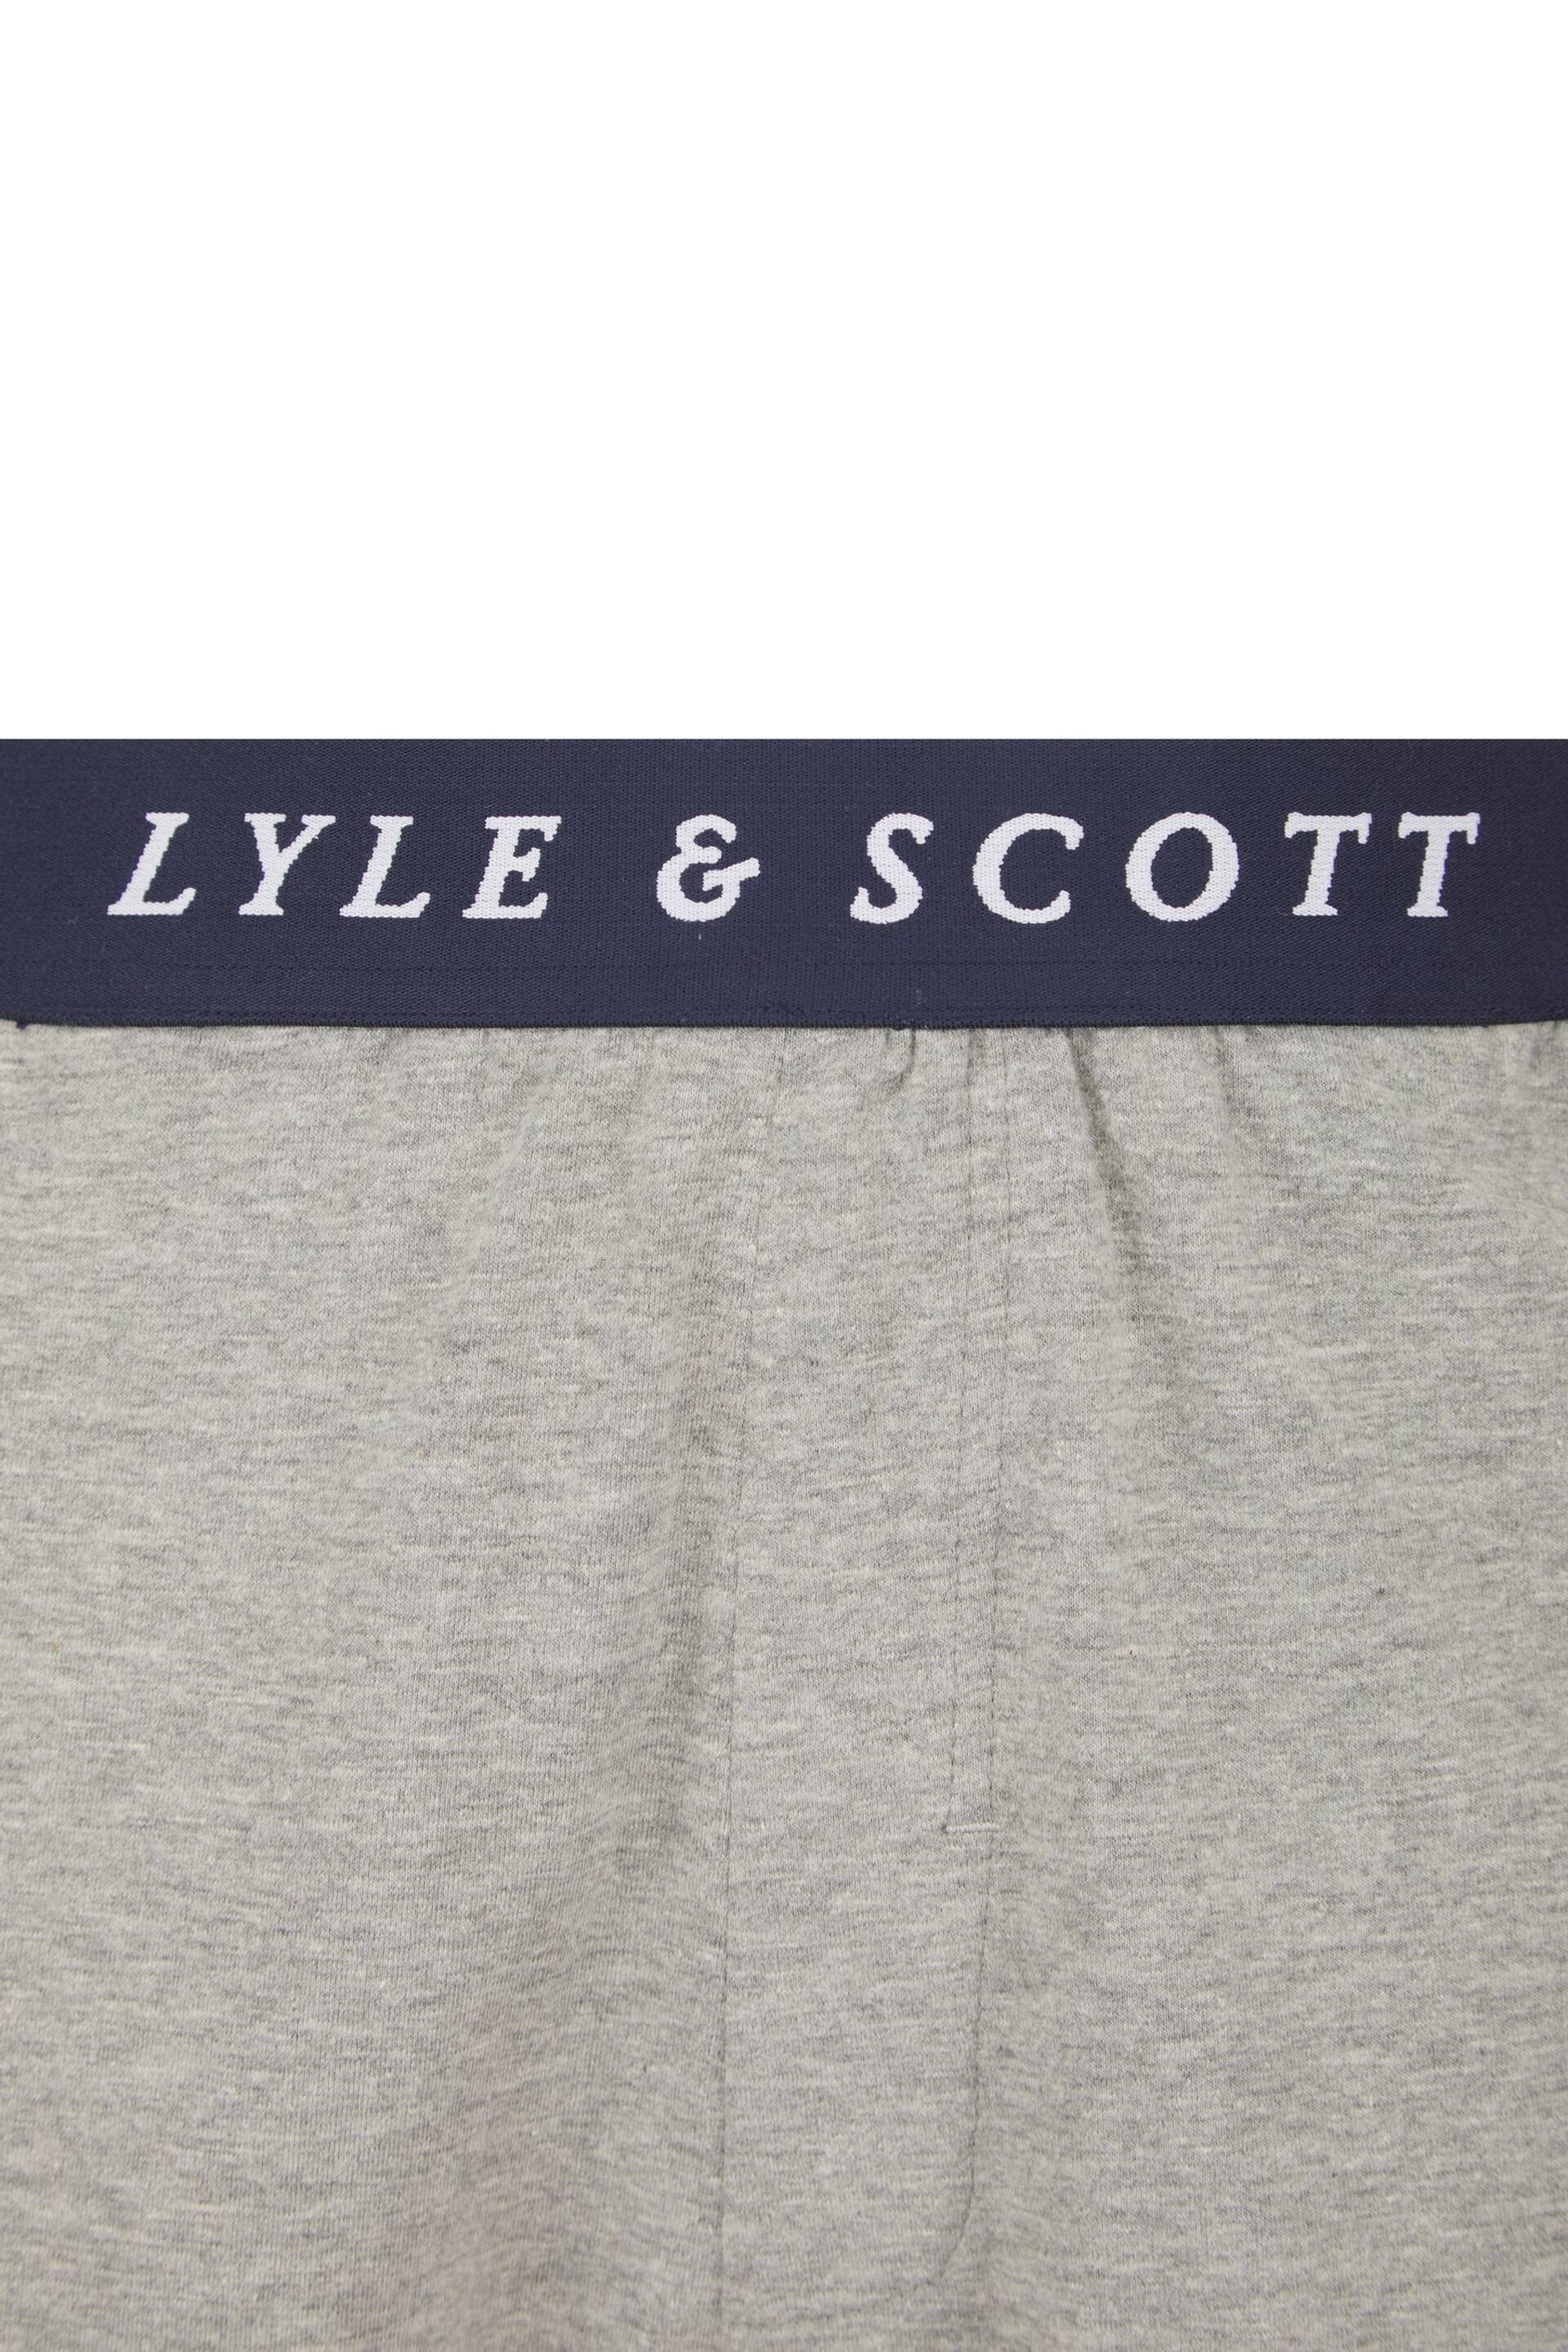 Lyle & Scott Oakley Loungewear Set - Image 5 of 6